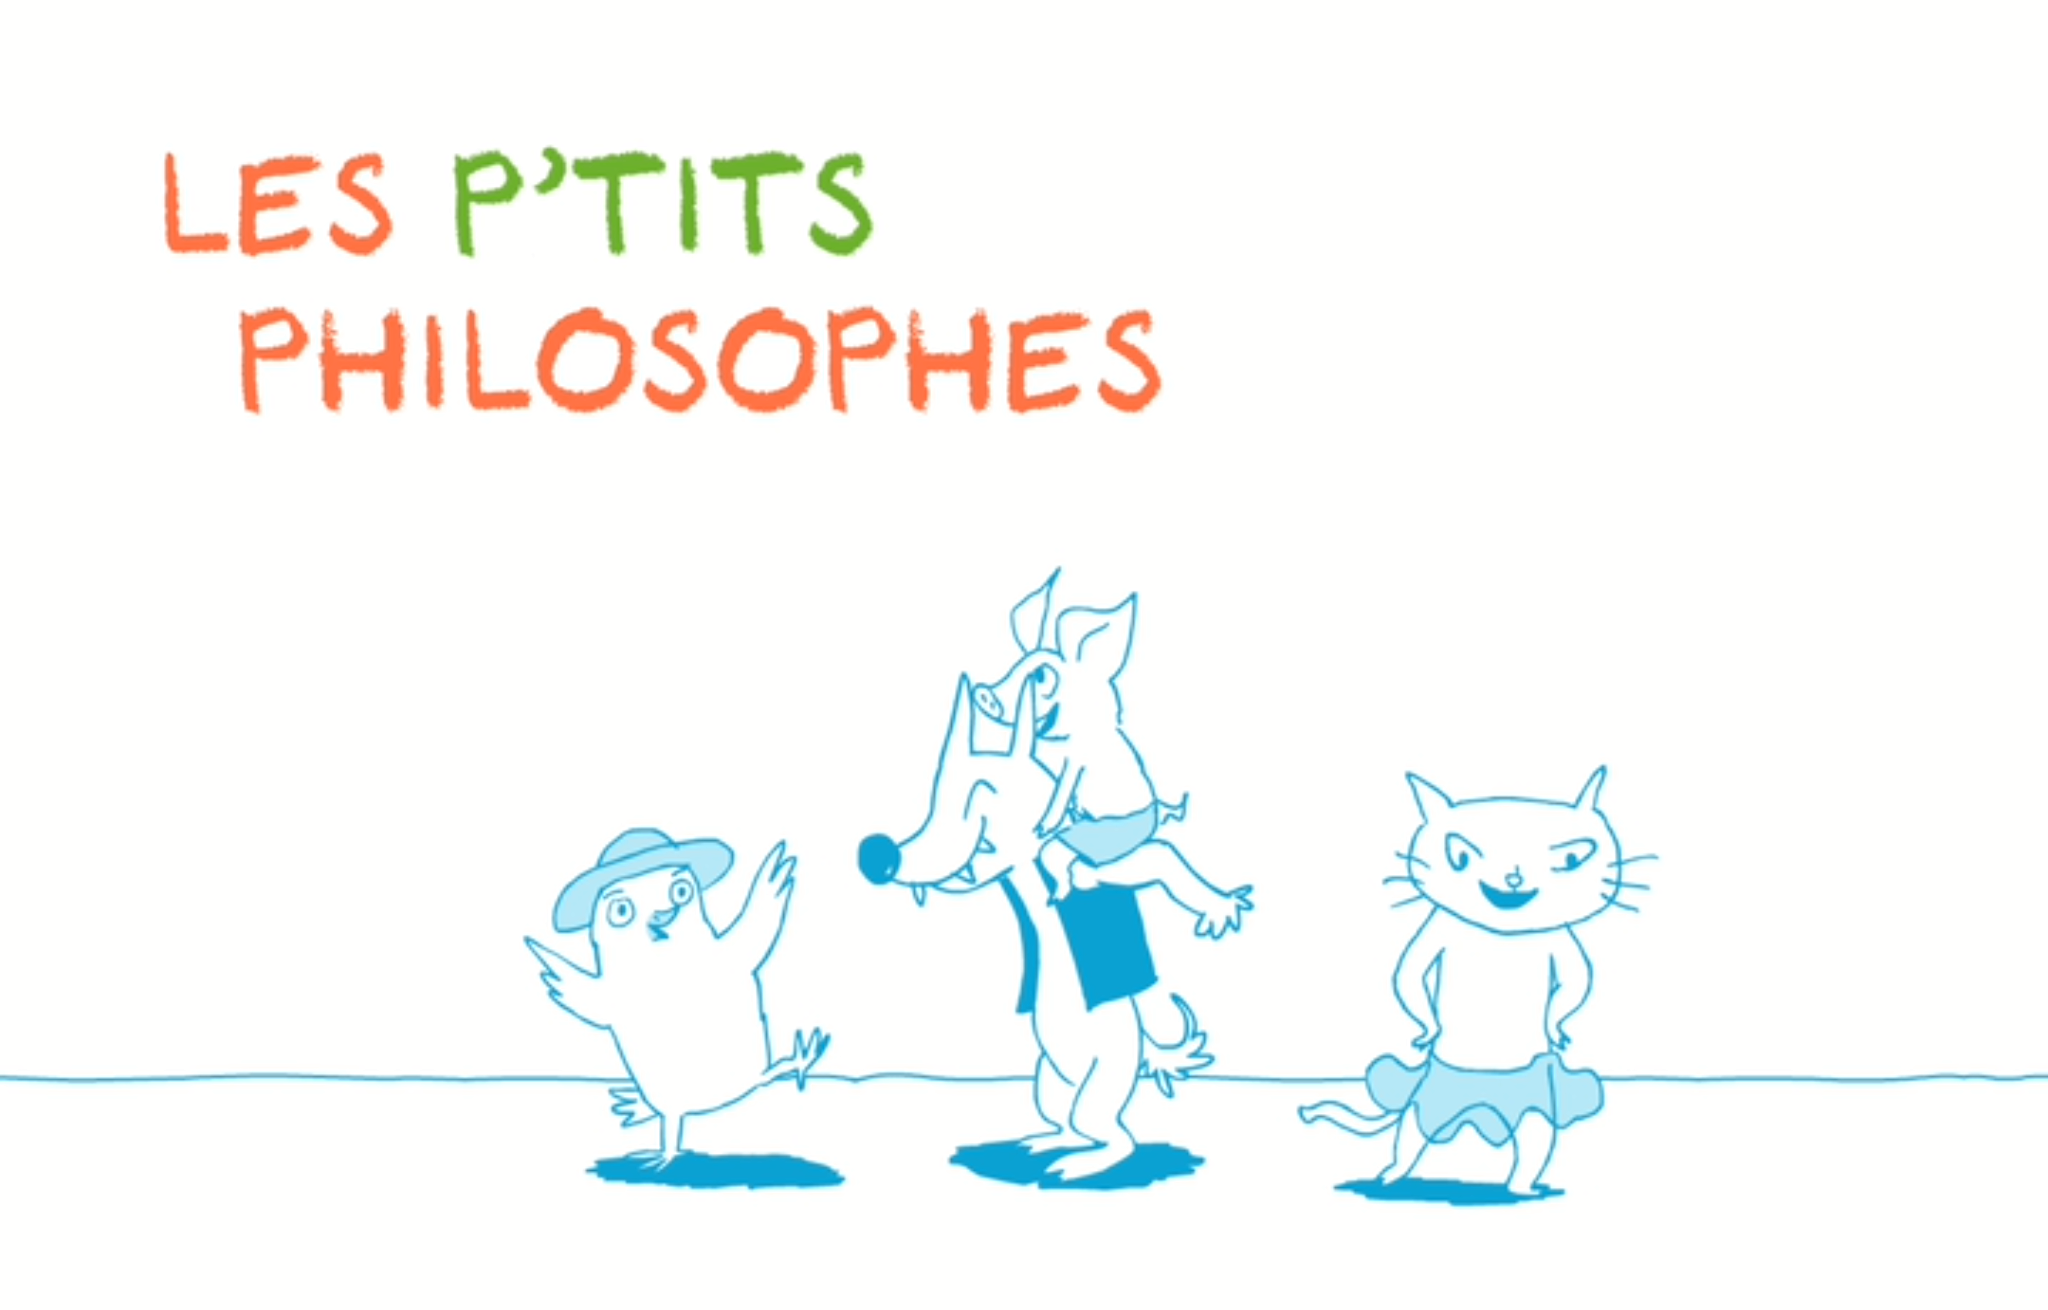 Les P'tits Philosophes